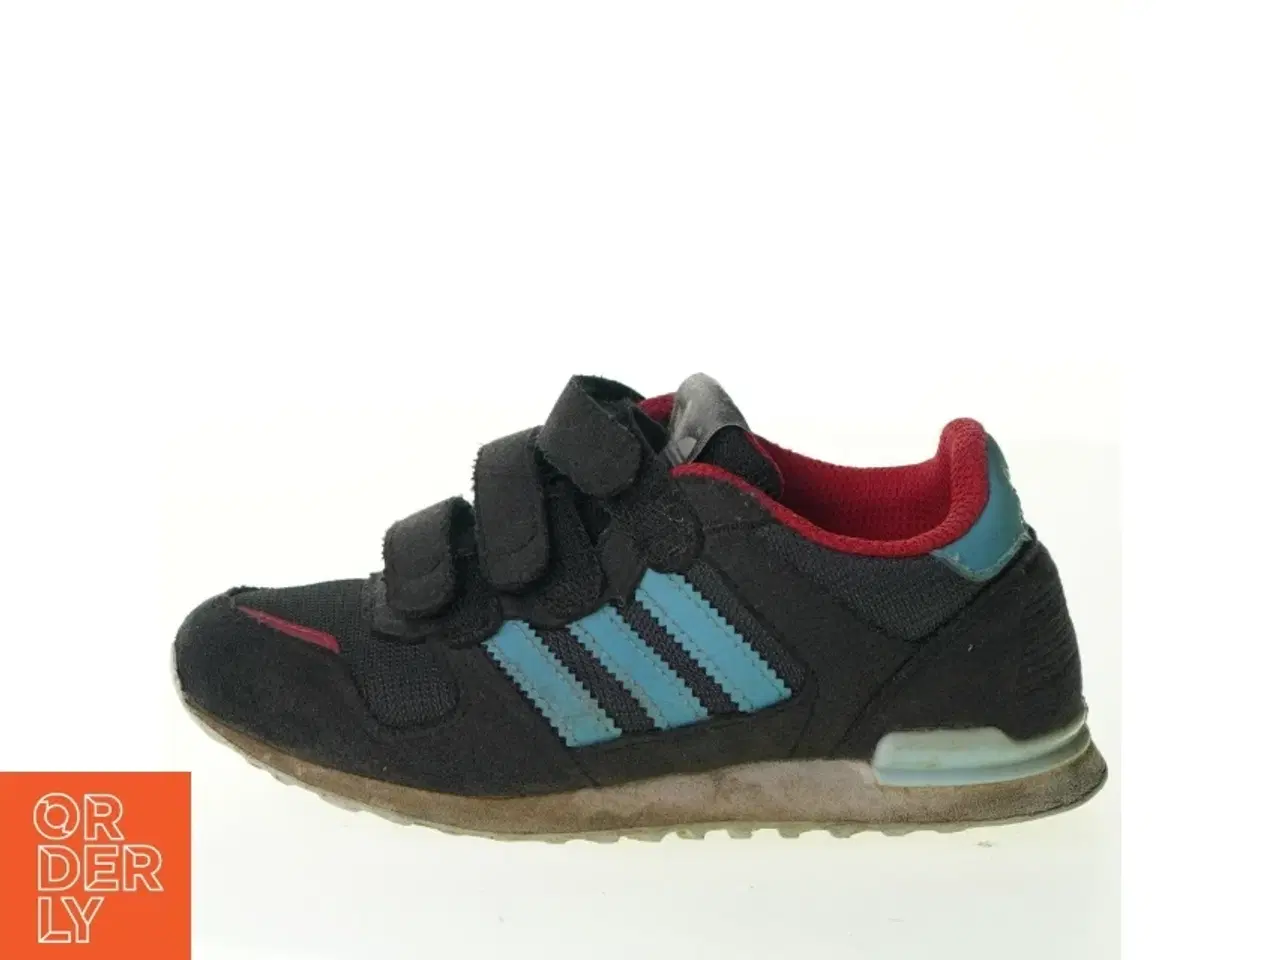 Billede 1 - Sko fra Adidas (str. 22 cm)